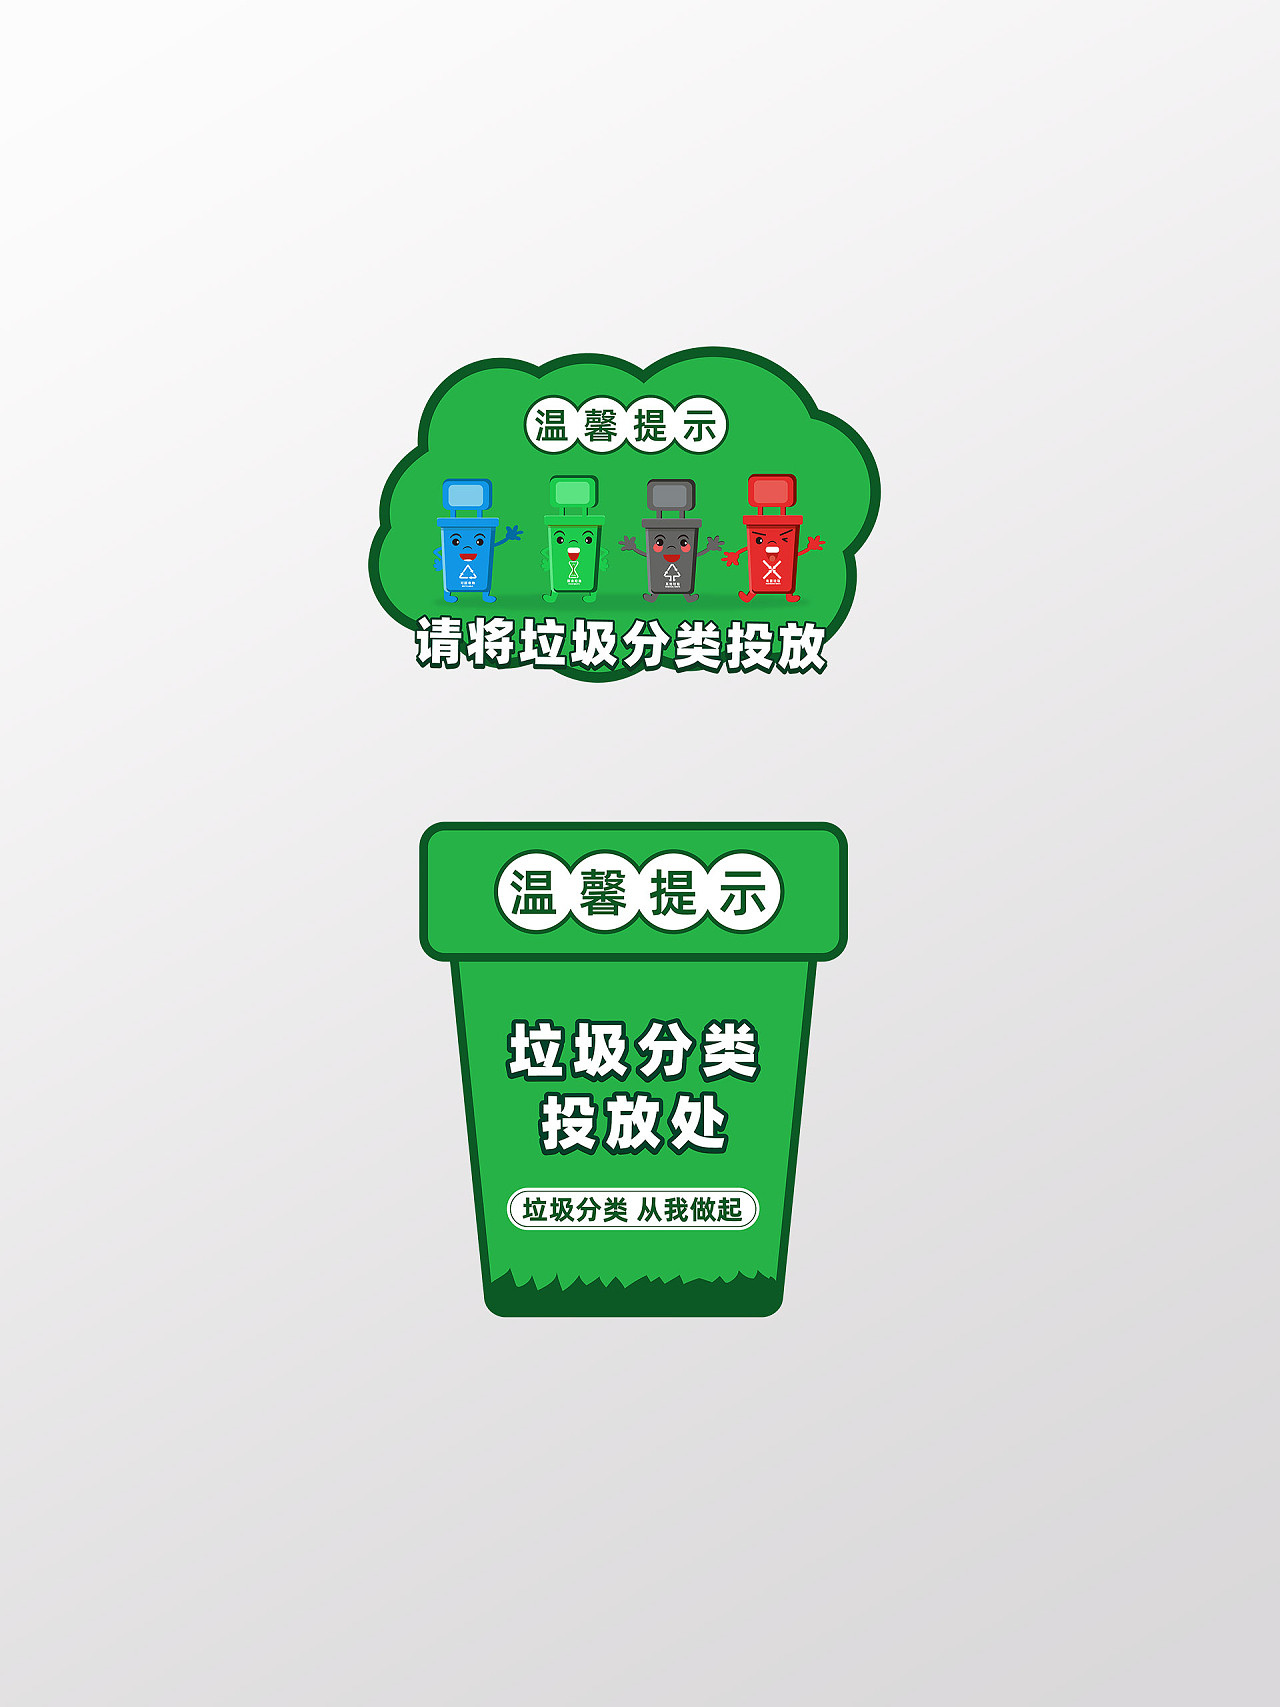 绿色卡通风格垃圾分类投放温馨提示标识标志垃圾分类标识